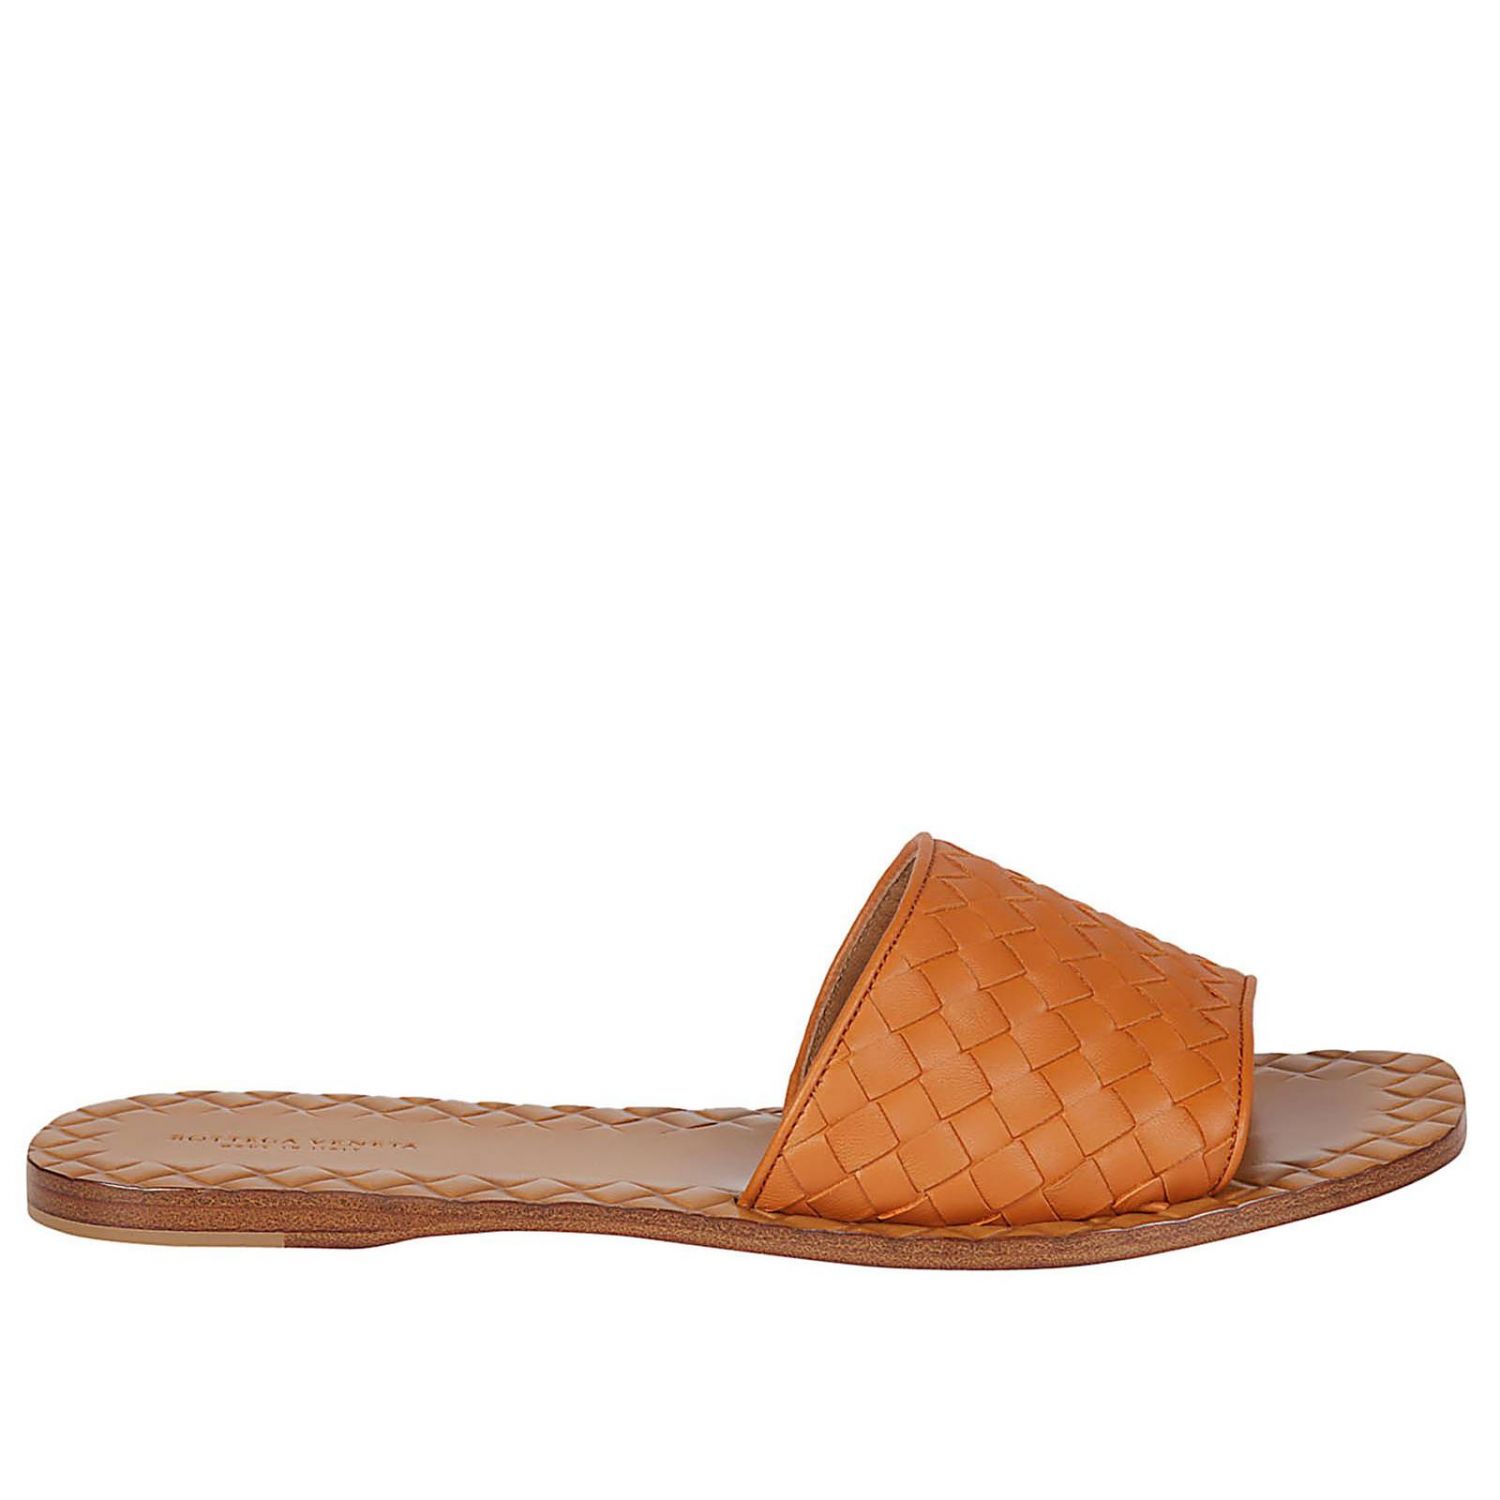 BOTTEGA VENETA: Heeled sandals women - Orange | Flat Sandals Bottega